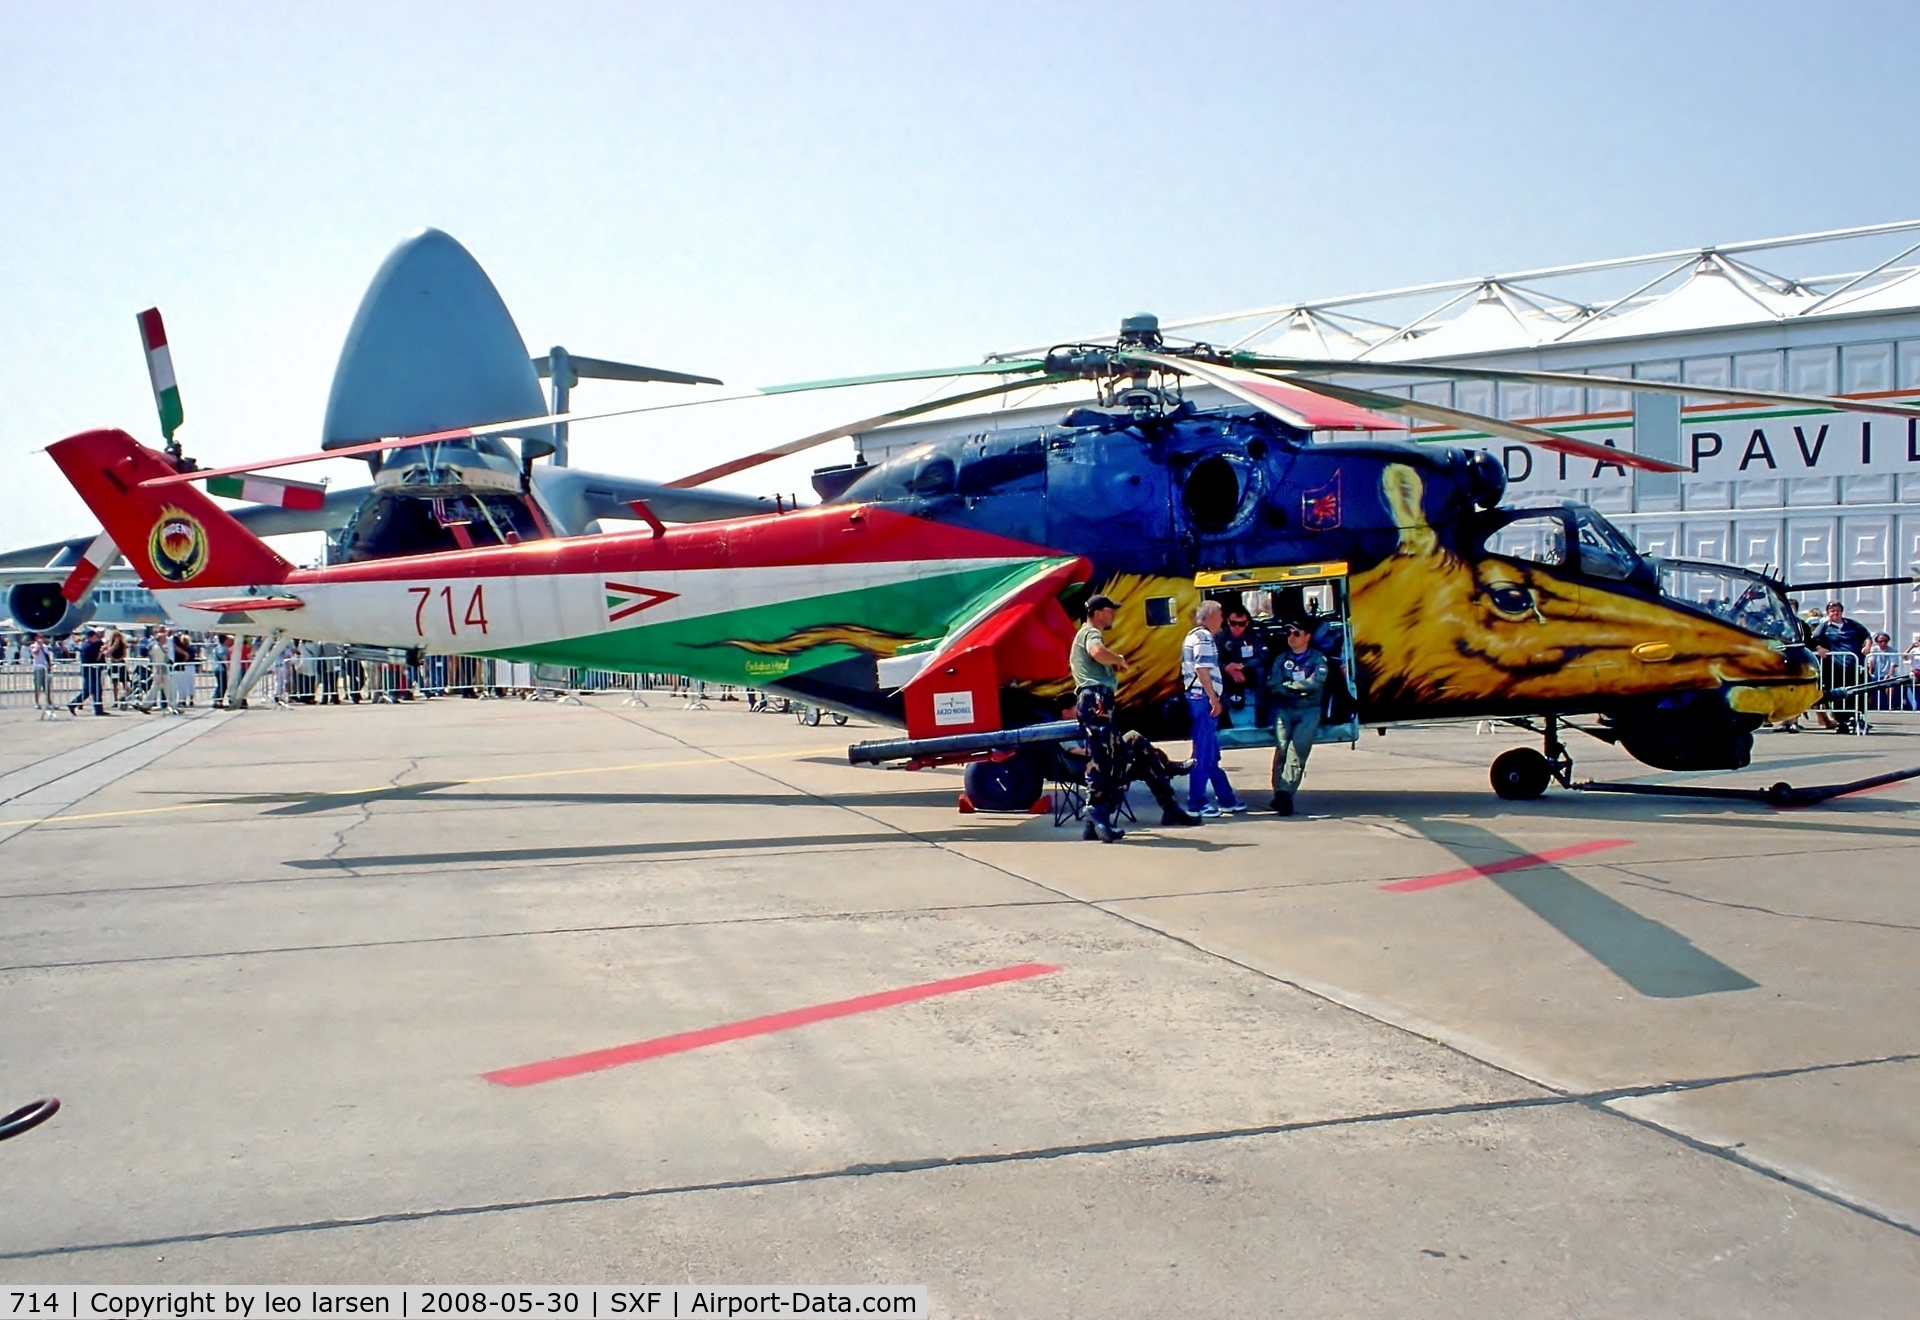 714, 1985 Mil Mi-24V Hind E C/N K220714, Berlin Air Show 30.5.08